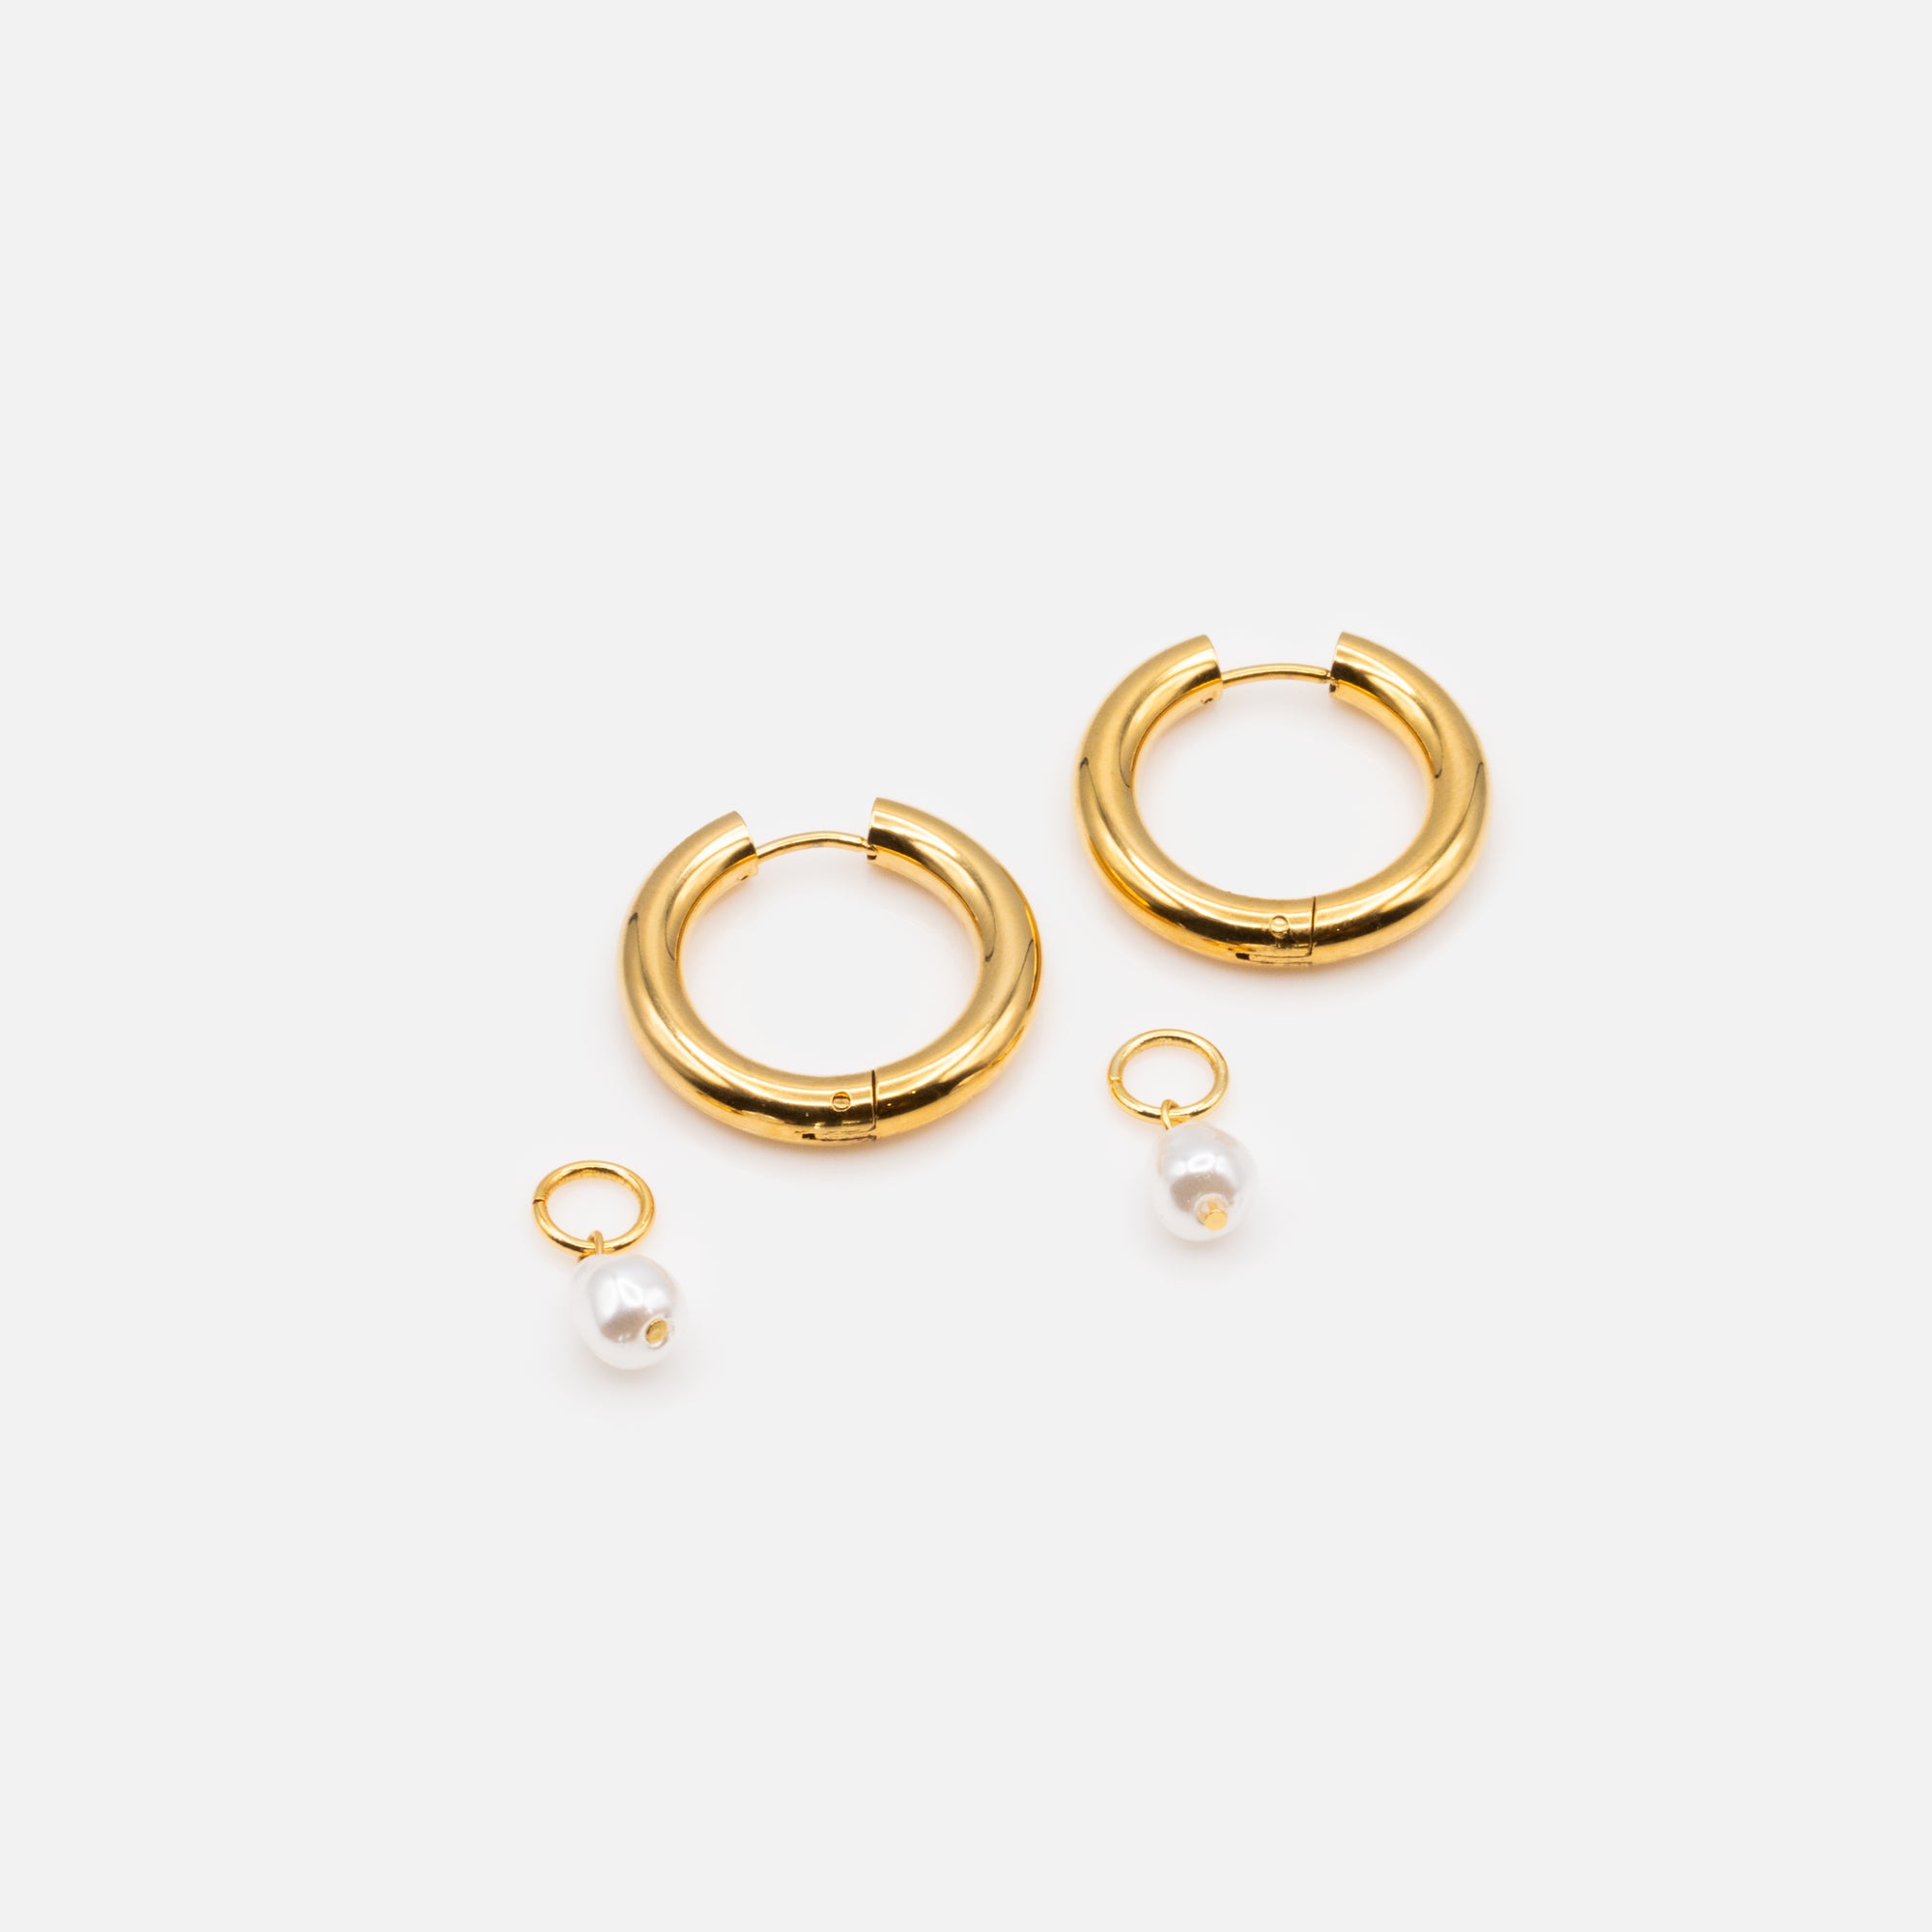 Boucles d'oreilles anneaux épais dorés 24 mm avec breloque perle ronde en acier inoxydable